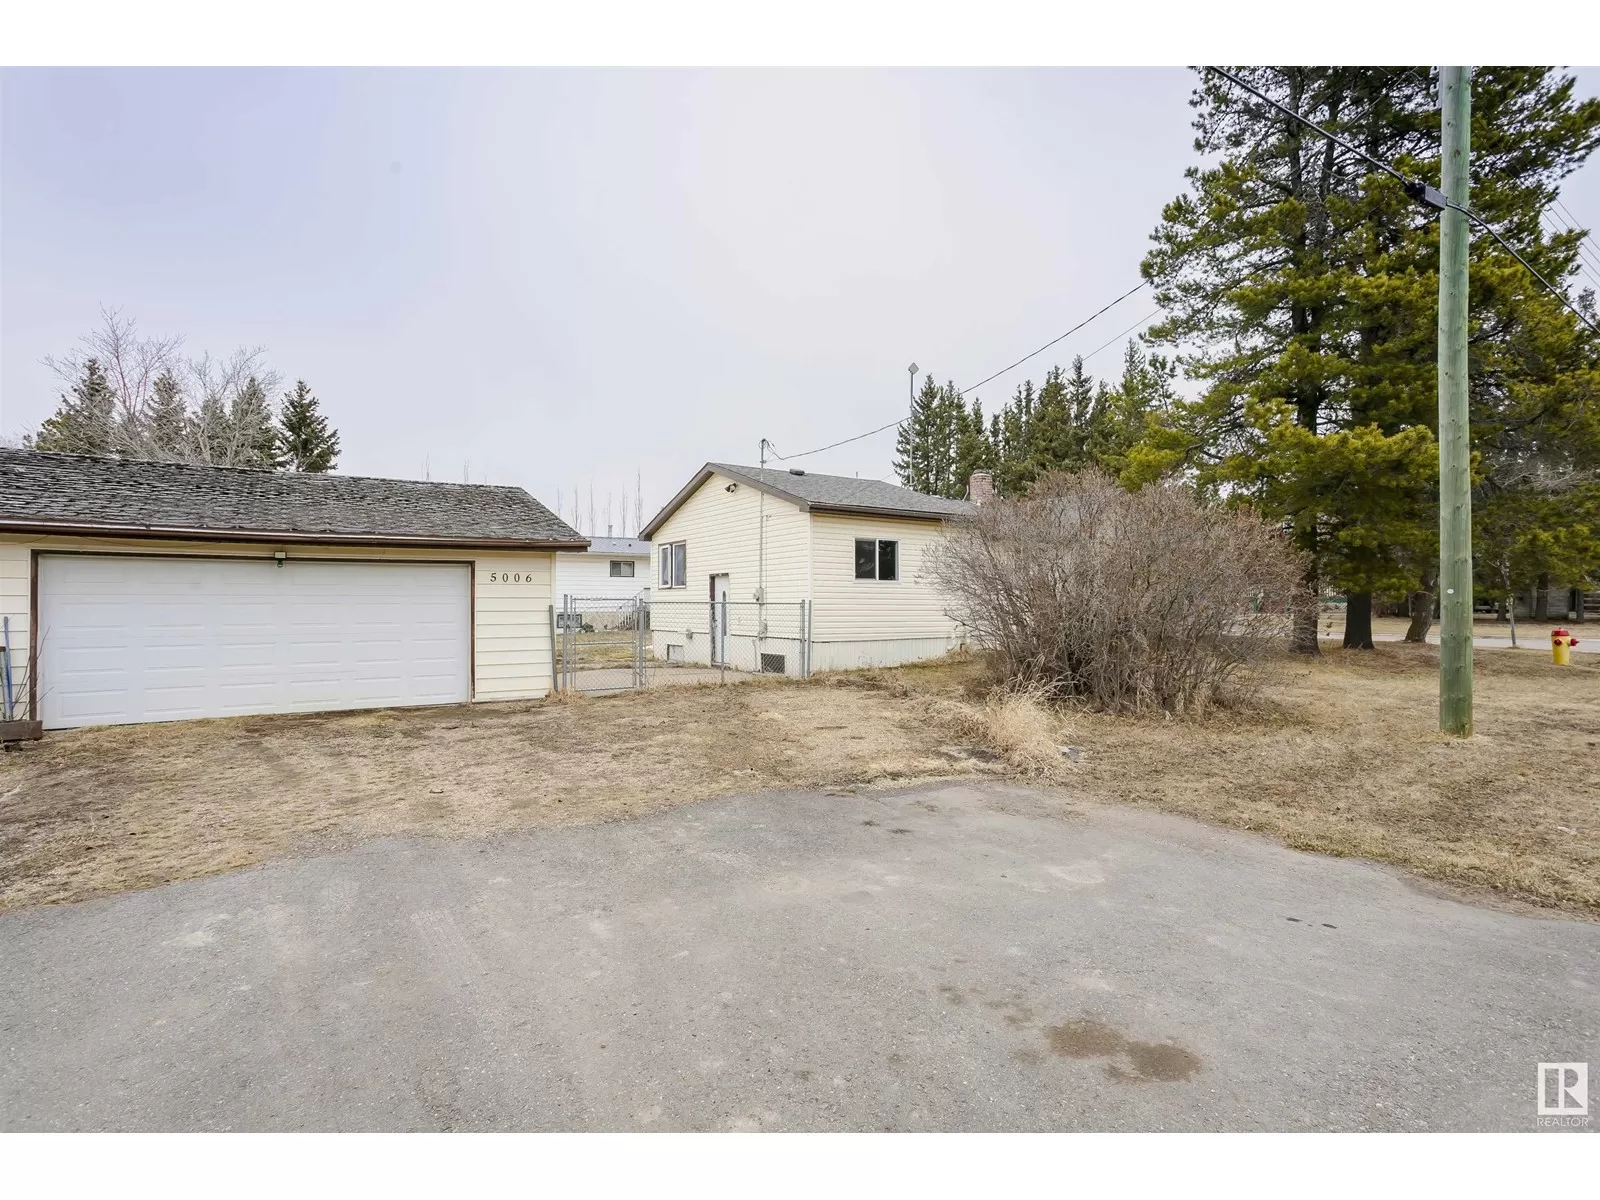 House for rent: 5006 Schlender Av, New Sarepta, Alberta T0B 3M0